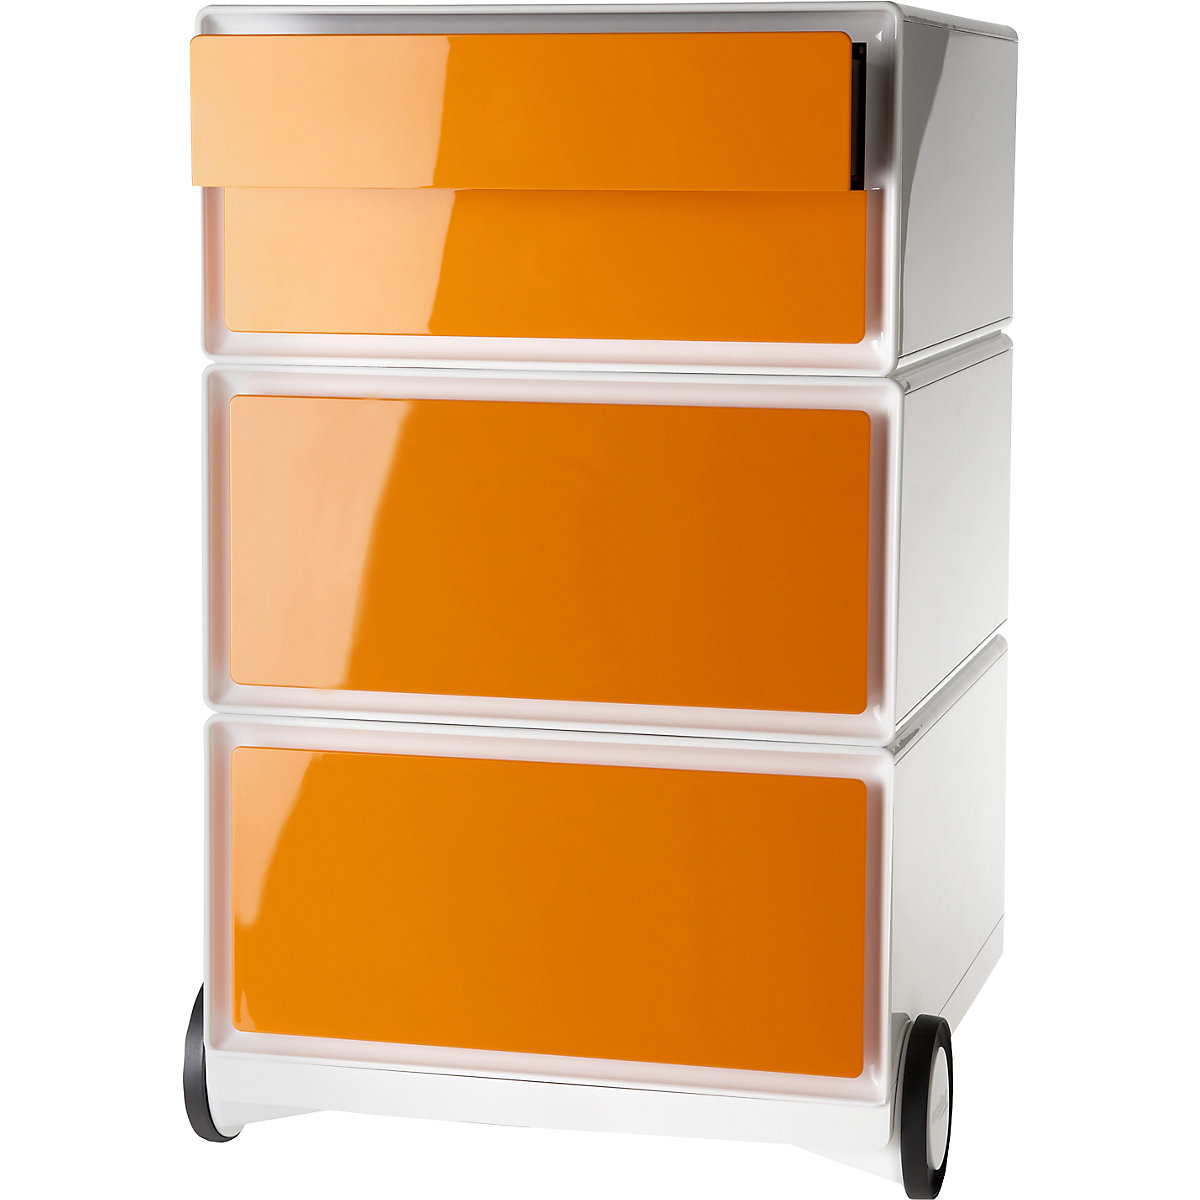 Pomični predalnik easyBox® – Paperflow, 2 predala, 2 nižja predala, bele / oranžne barve-9